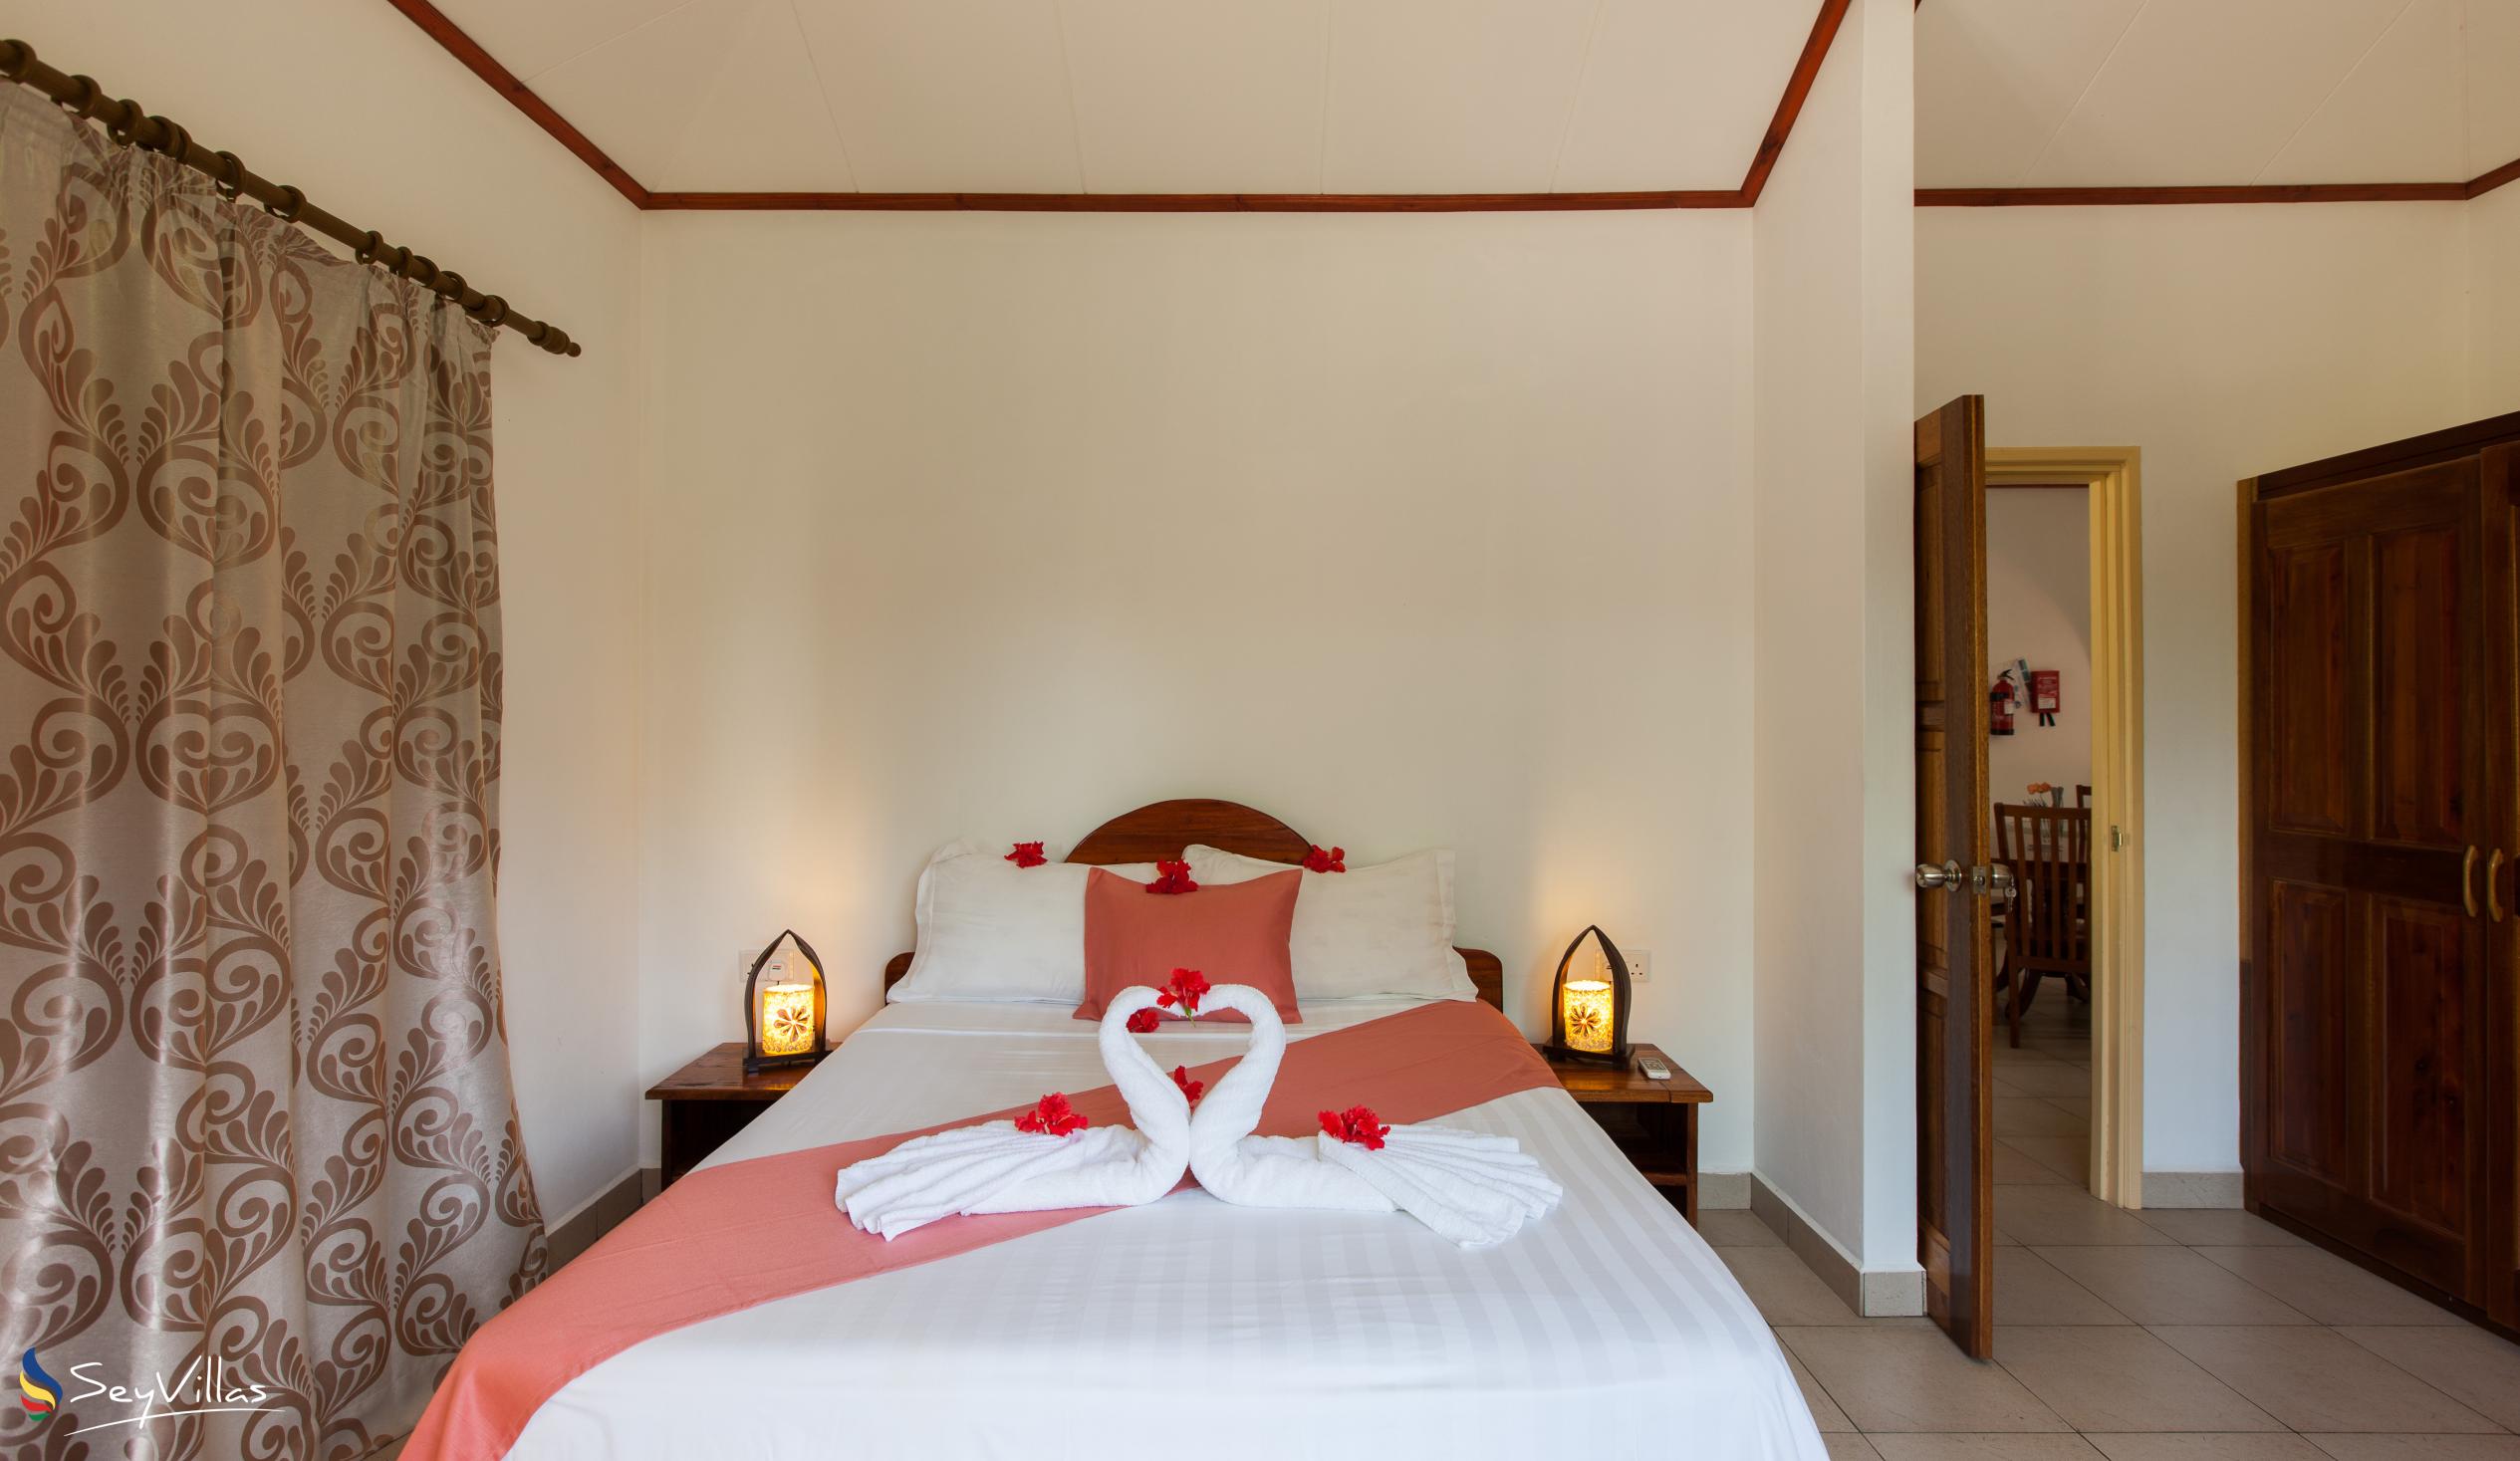 Foto 16: Hostellerie La Digue - Bungalow con 3 camere da letto - La Digue (Seychelles)